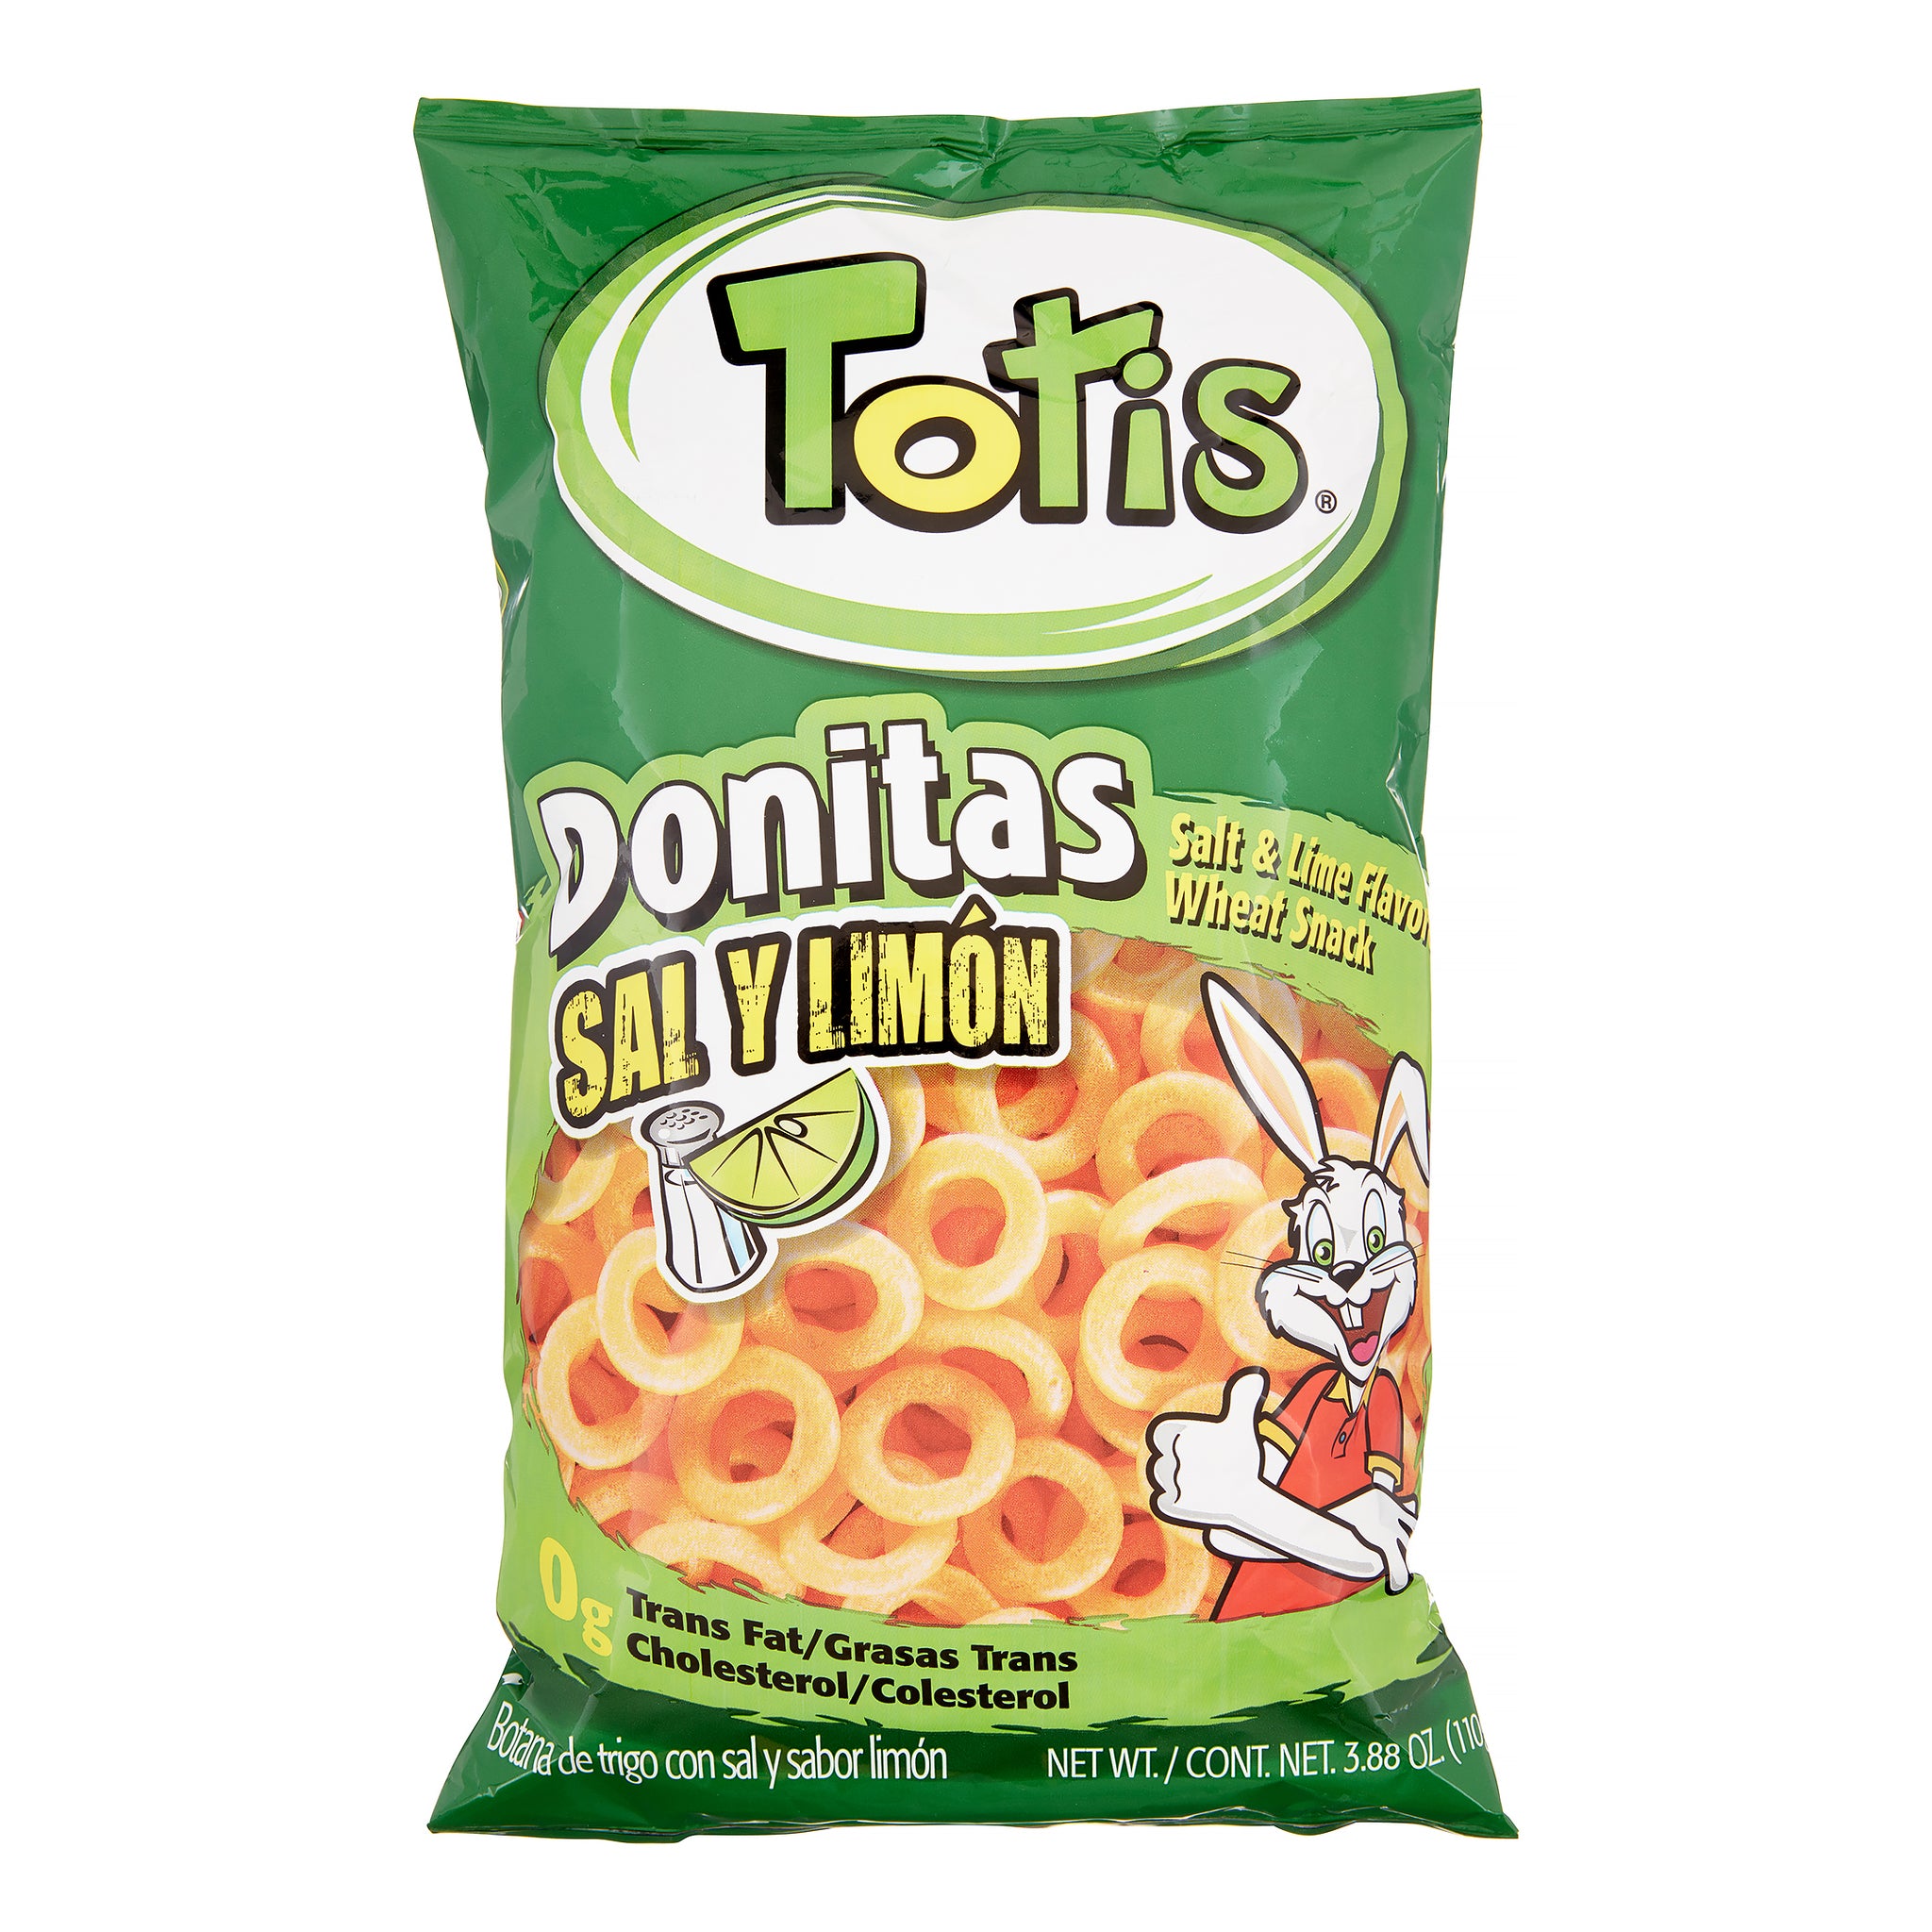 Totis Tortilla Chips DONITAS SAL Y LIMON